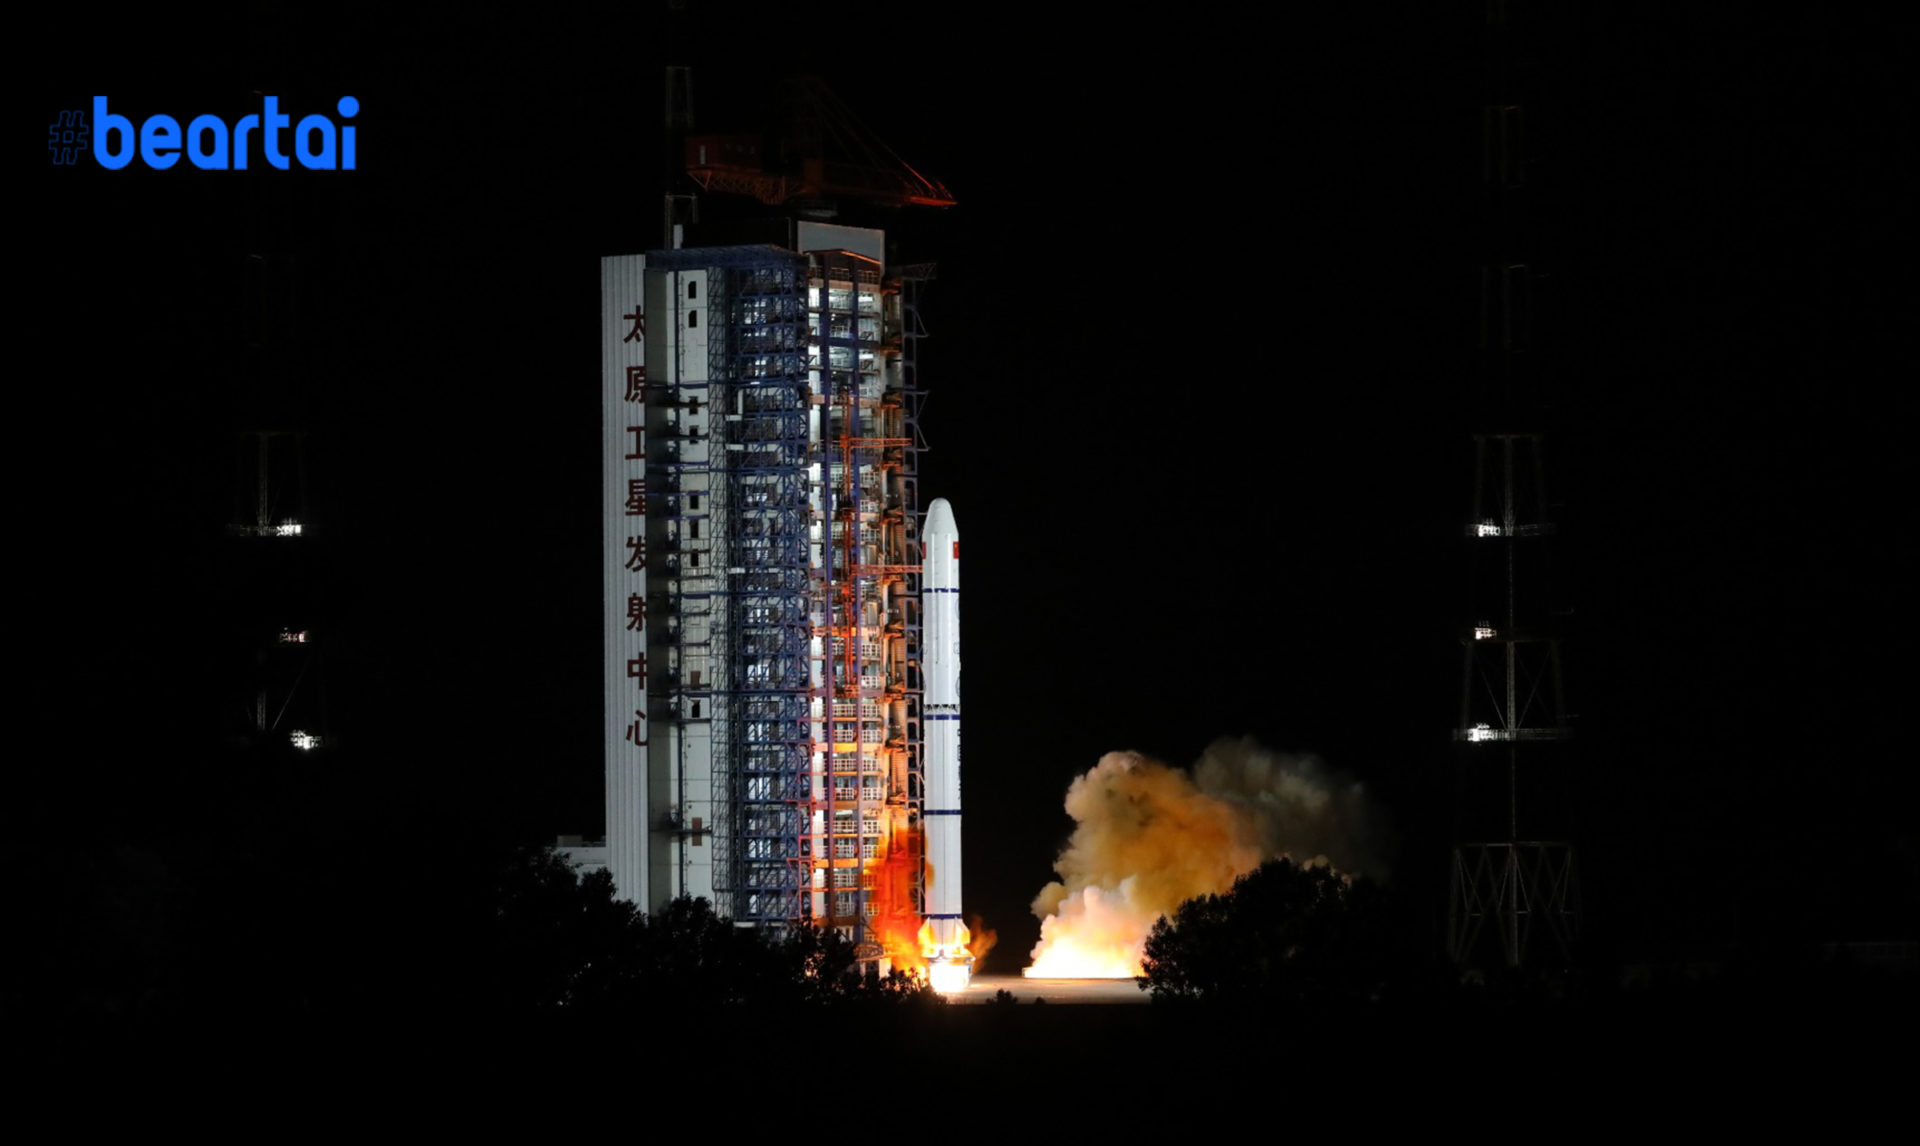 สำเร็จแล้ว! จีนส่งดาวเทียมสำรวจช่วยเปิดโลกทางทะเลดวงใหม่ Haiyang-1D เข้าสู่วงโคจรเรียบร้อย